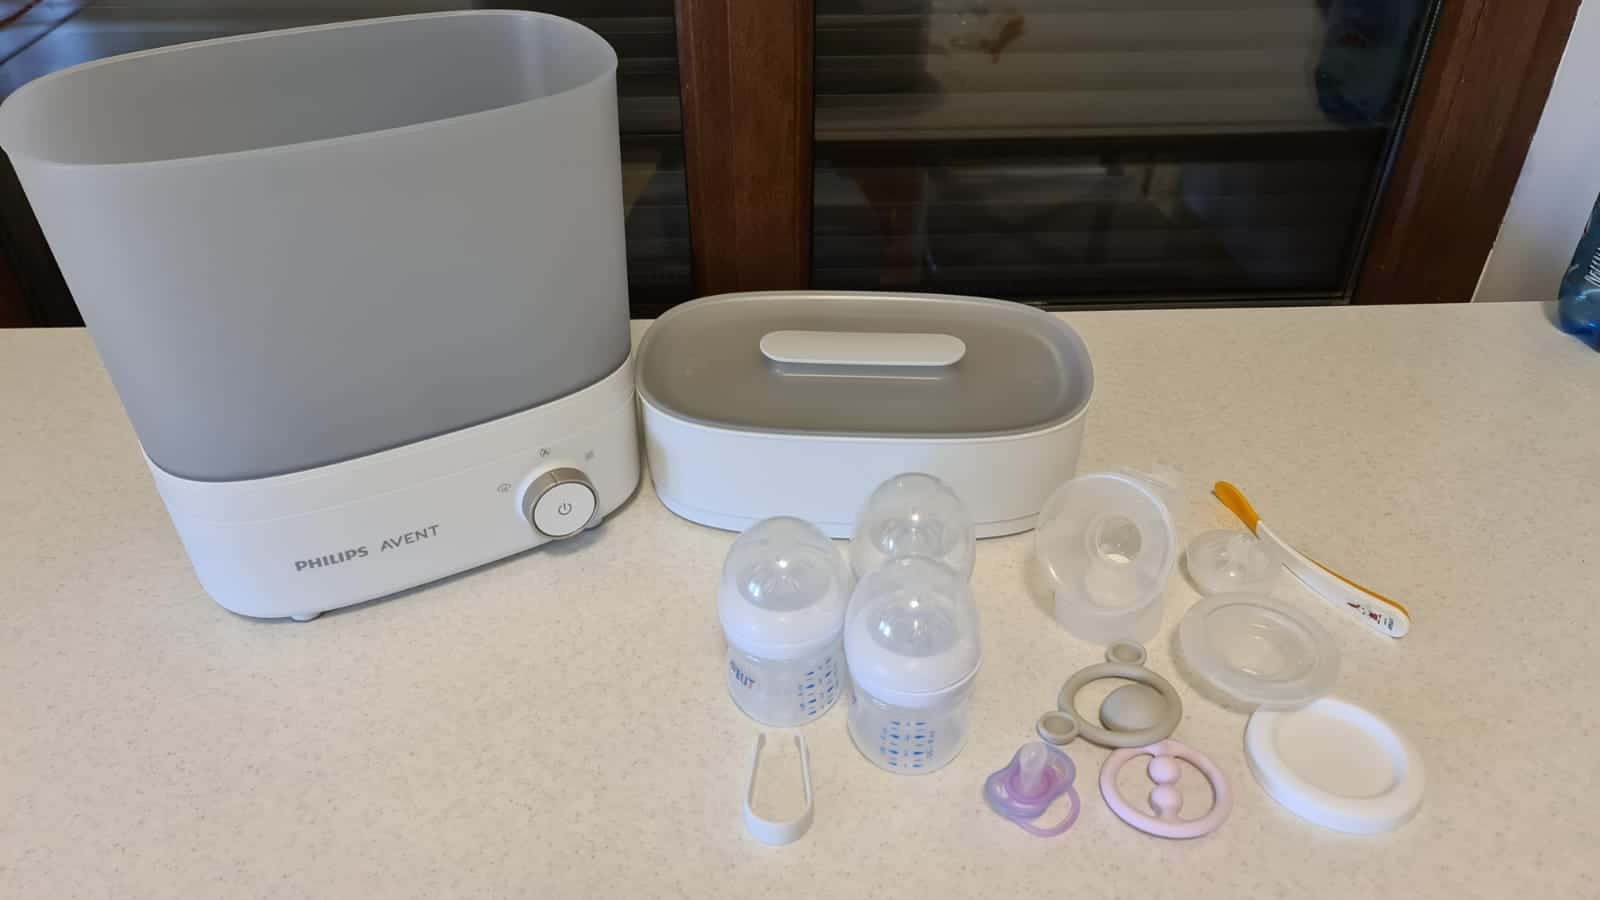 Cum spălăm, curățăm și sterilizăm echipamentul folosit la hrănirea bebelușului? Un start sănătos pentru copilul tău | Demamici.ro